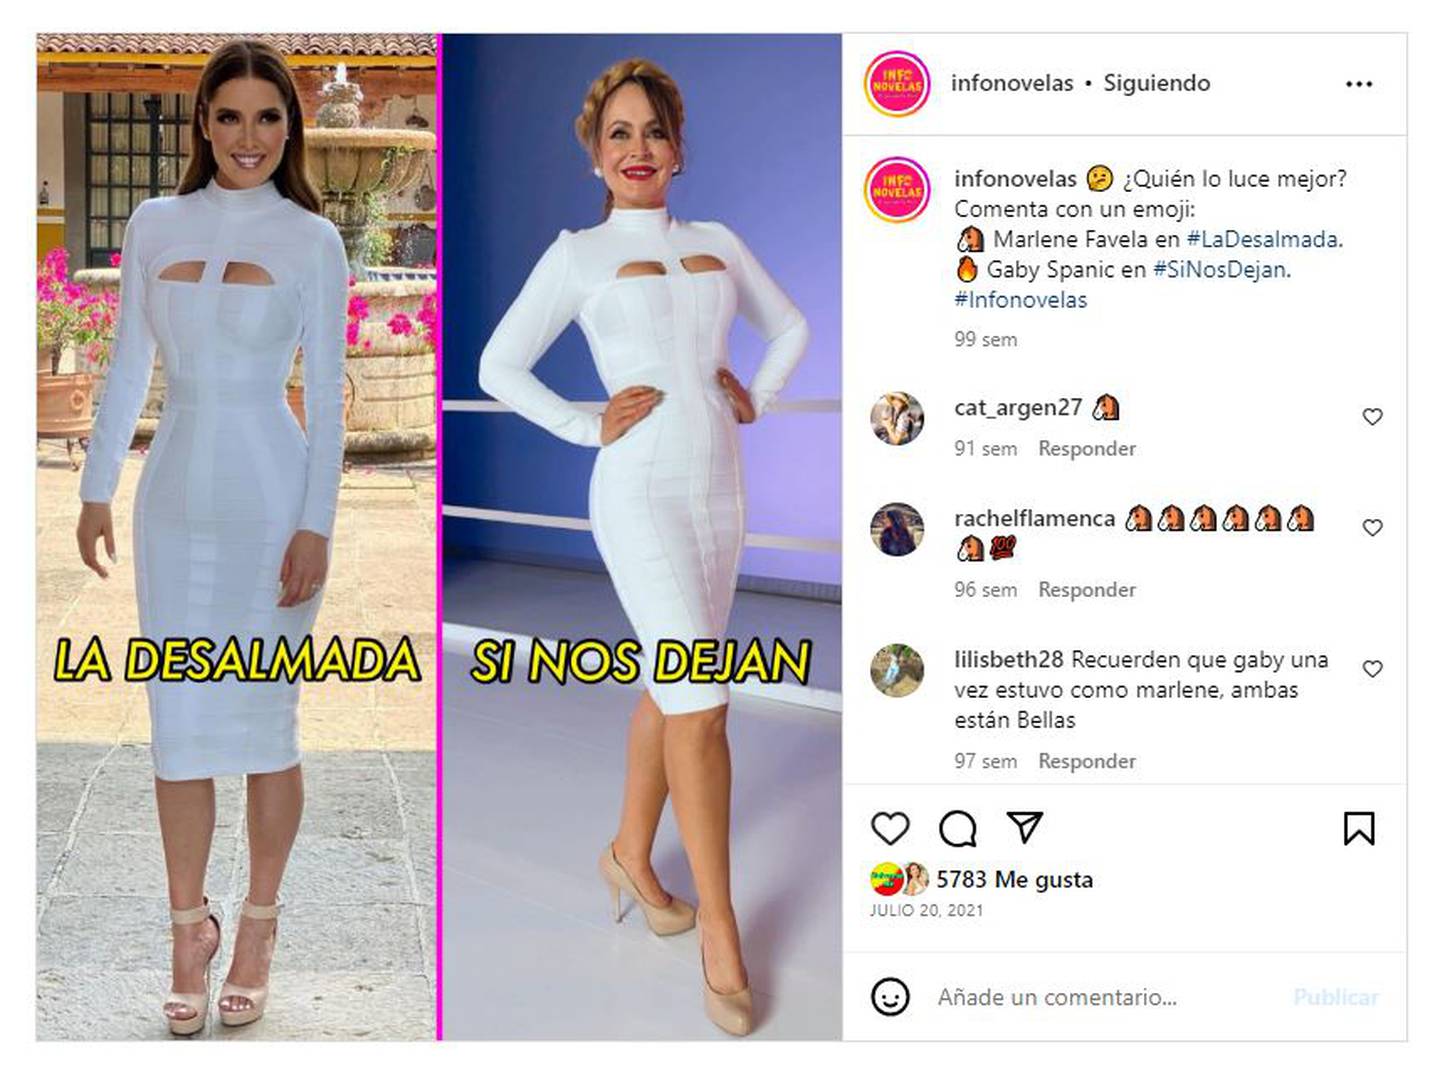 Los usuarios concluyeron que tanto Gaby Spanic como Marlene Favela se veían increíbles en el mismo vestido